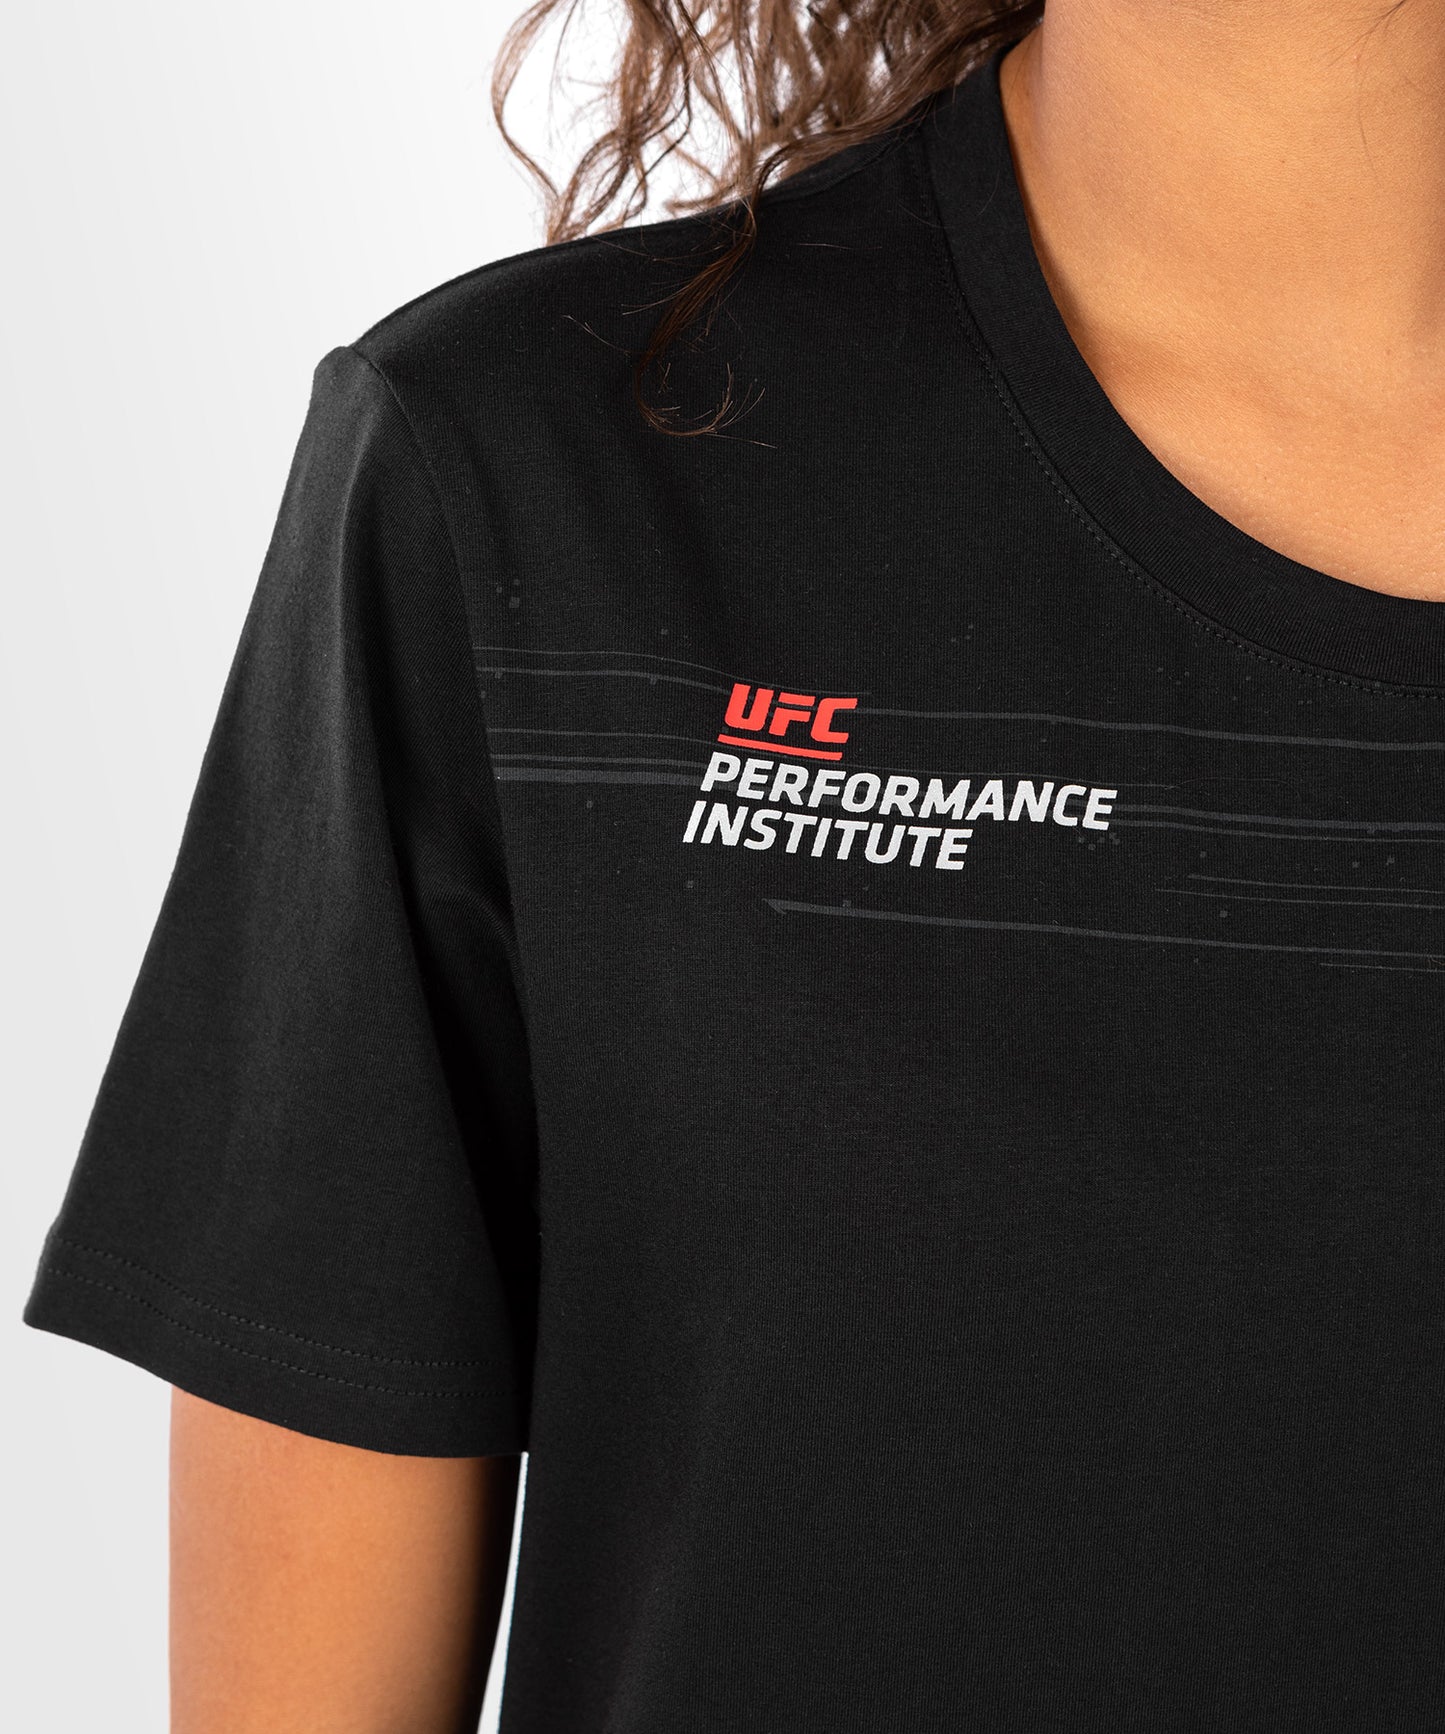 UFC Venum Performance Institute 2.0 Women’s T-Shirt - Black/Red M